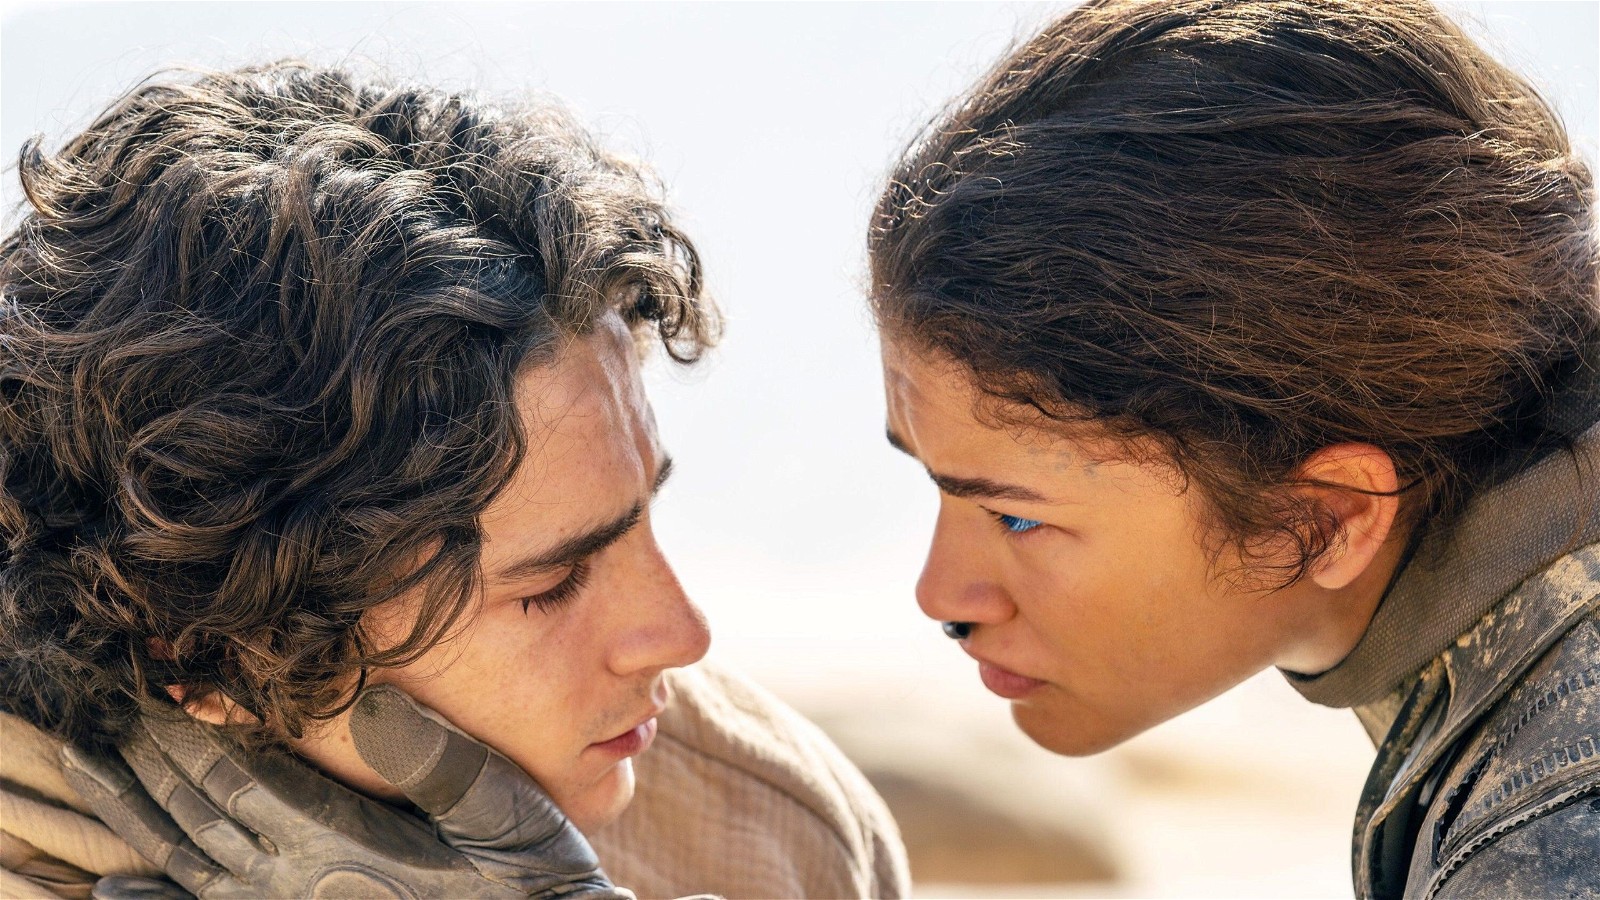 Timothee Chalamet and Zendaya in the Dune film series 